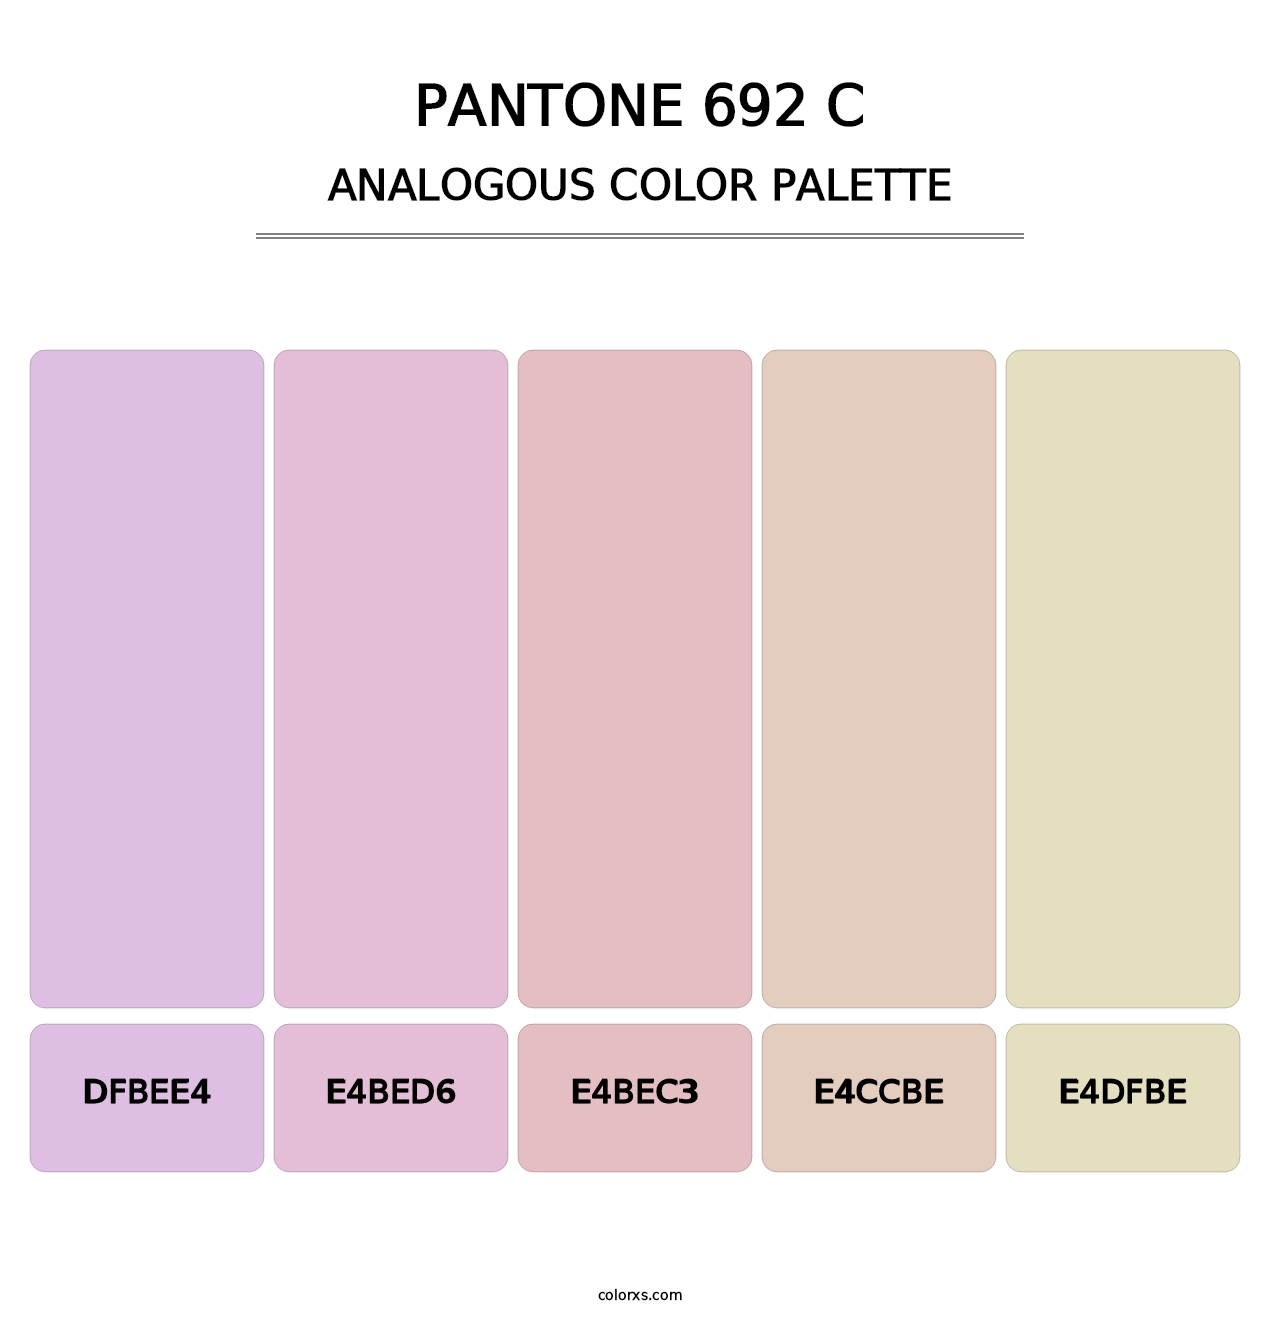 PANTONE 692 C - Analogous Color Palette